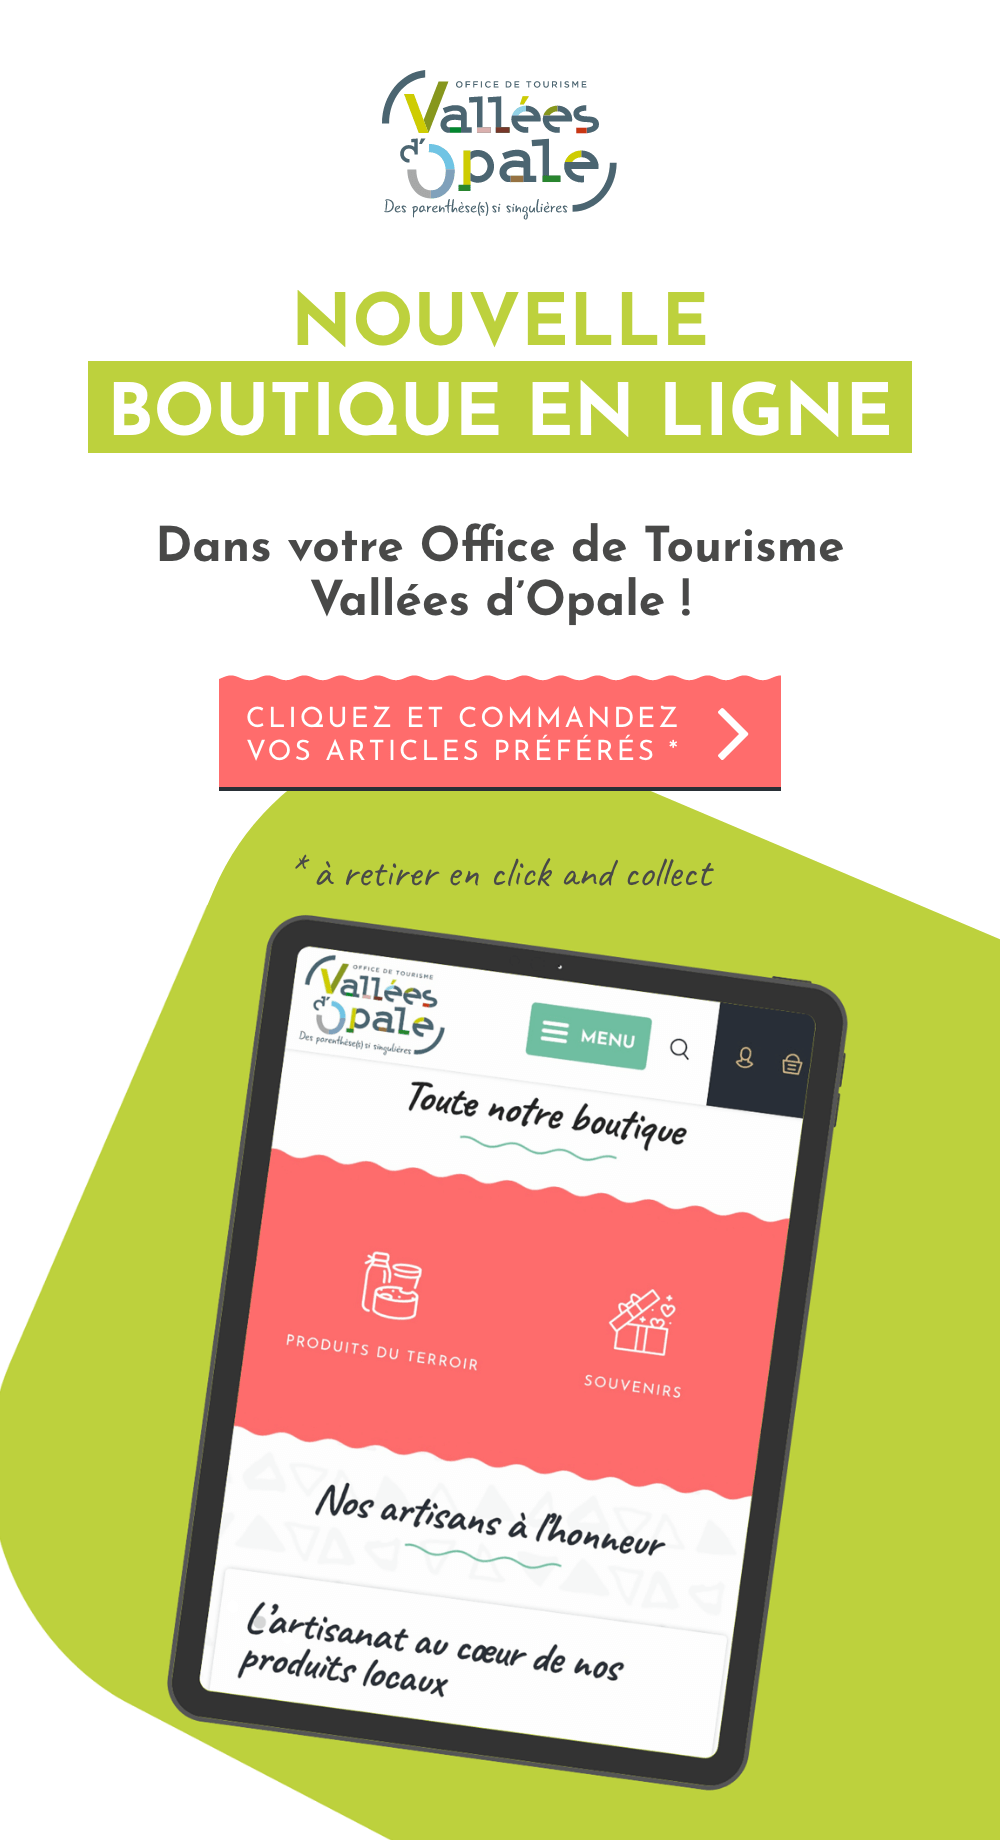 Nouvelle boutique en ligne : Dans votre Office de Tourisme Vallées d’Opale ! Cliquez et commandez vos articles préférés *